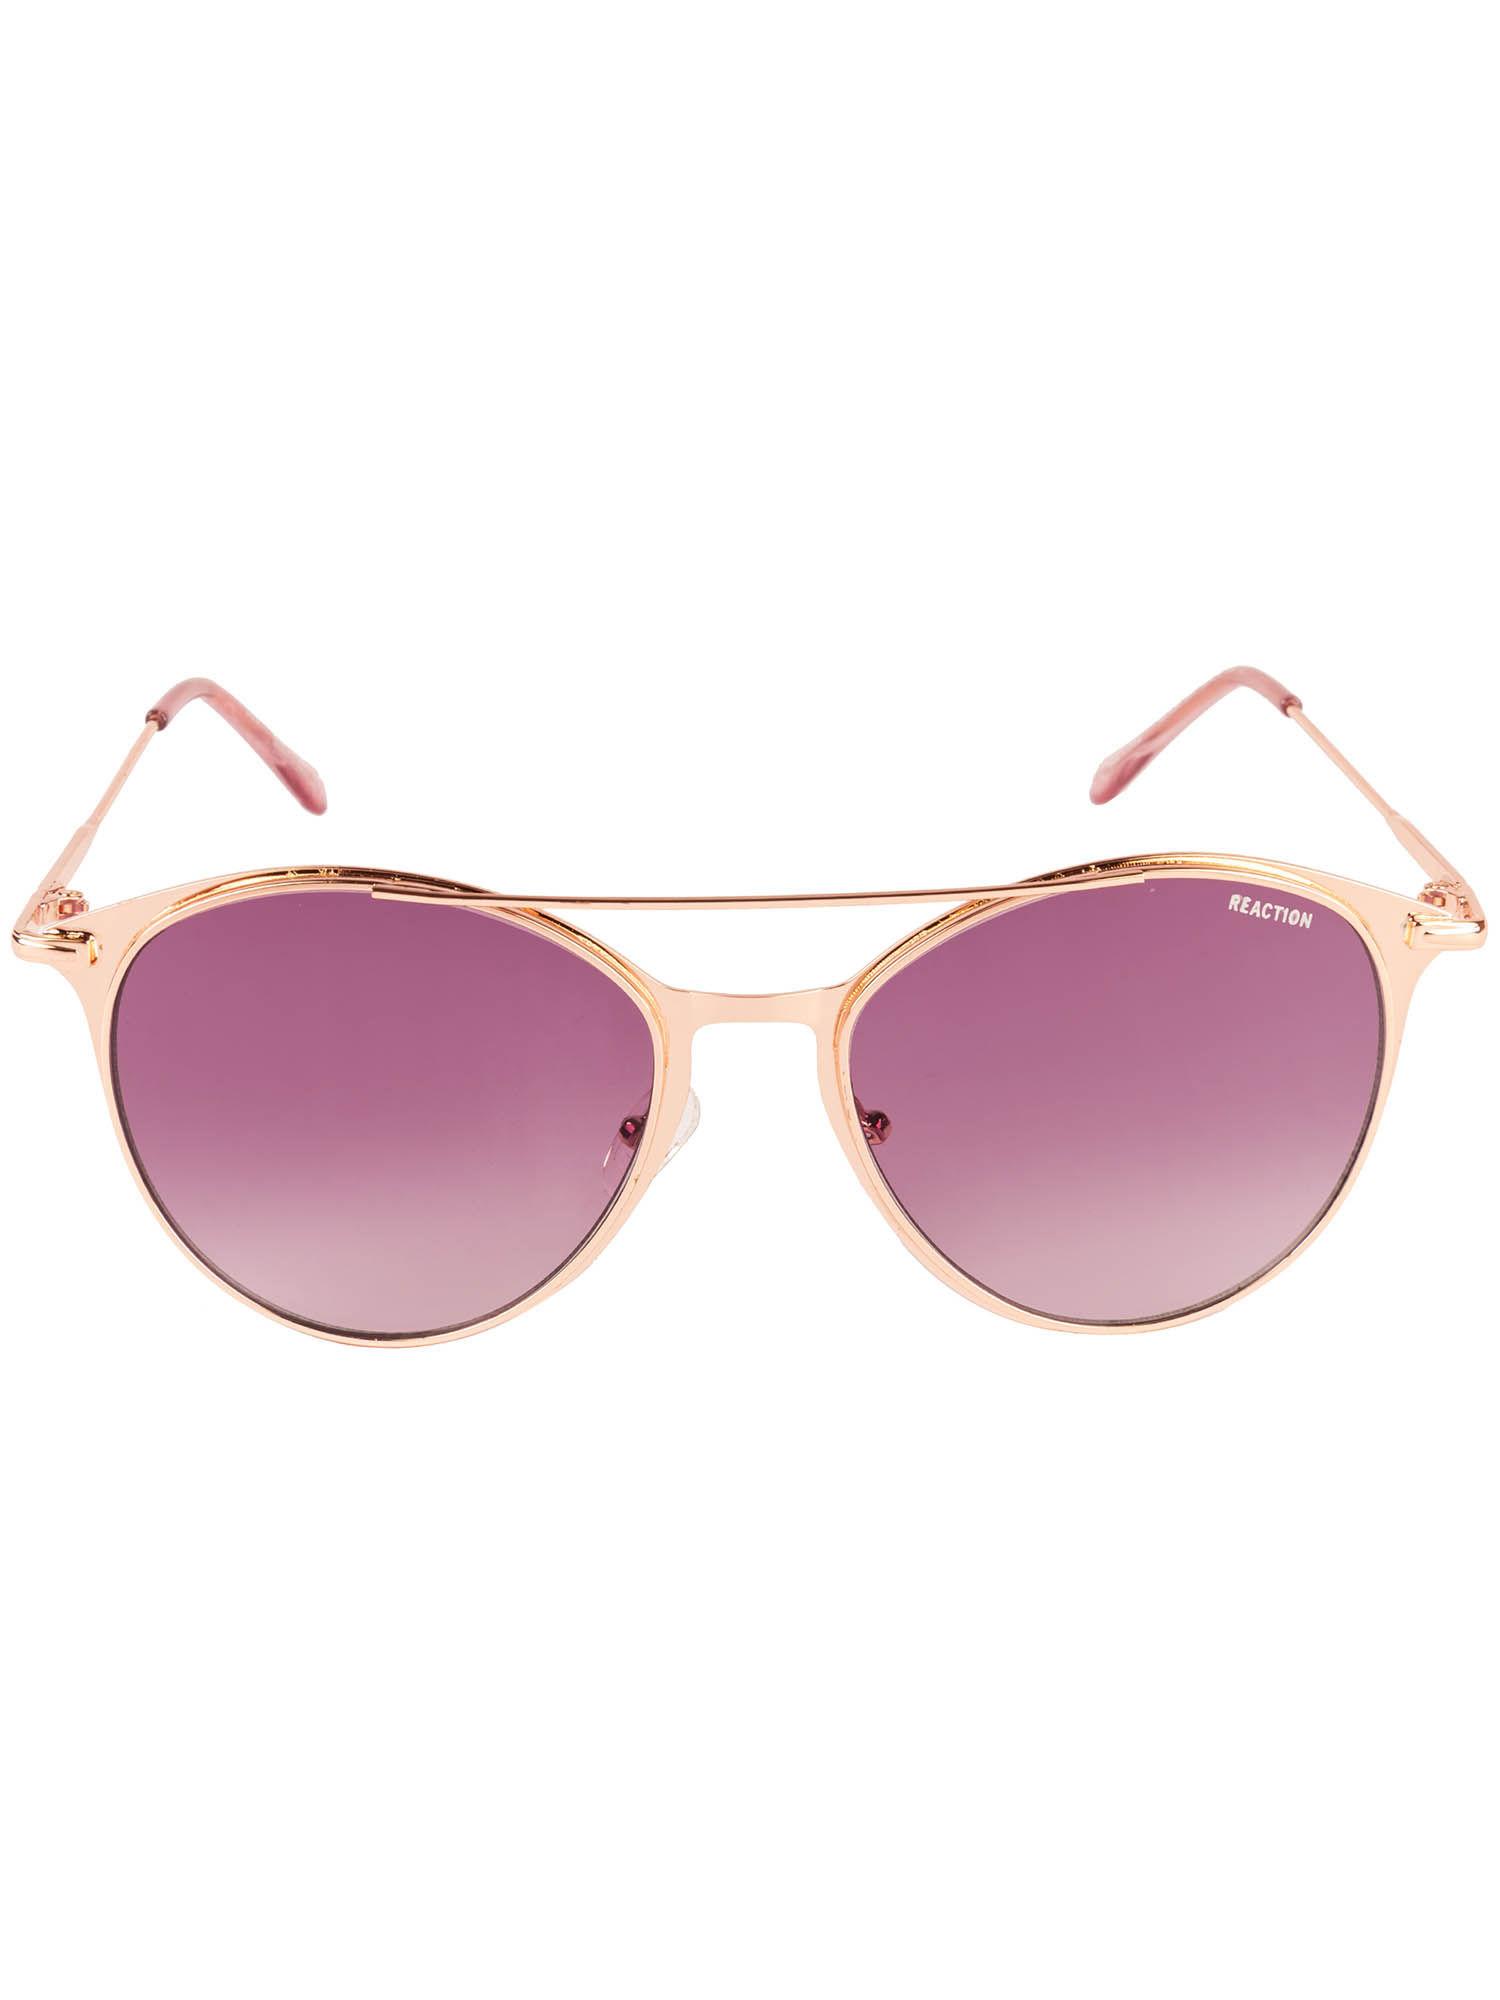 rose gold metal sunglasses